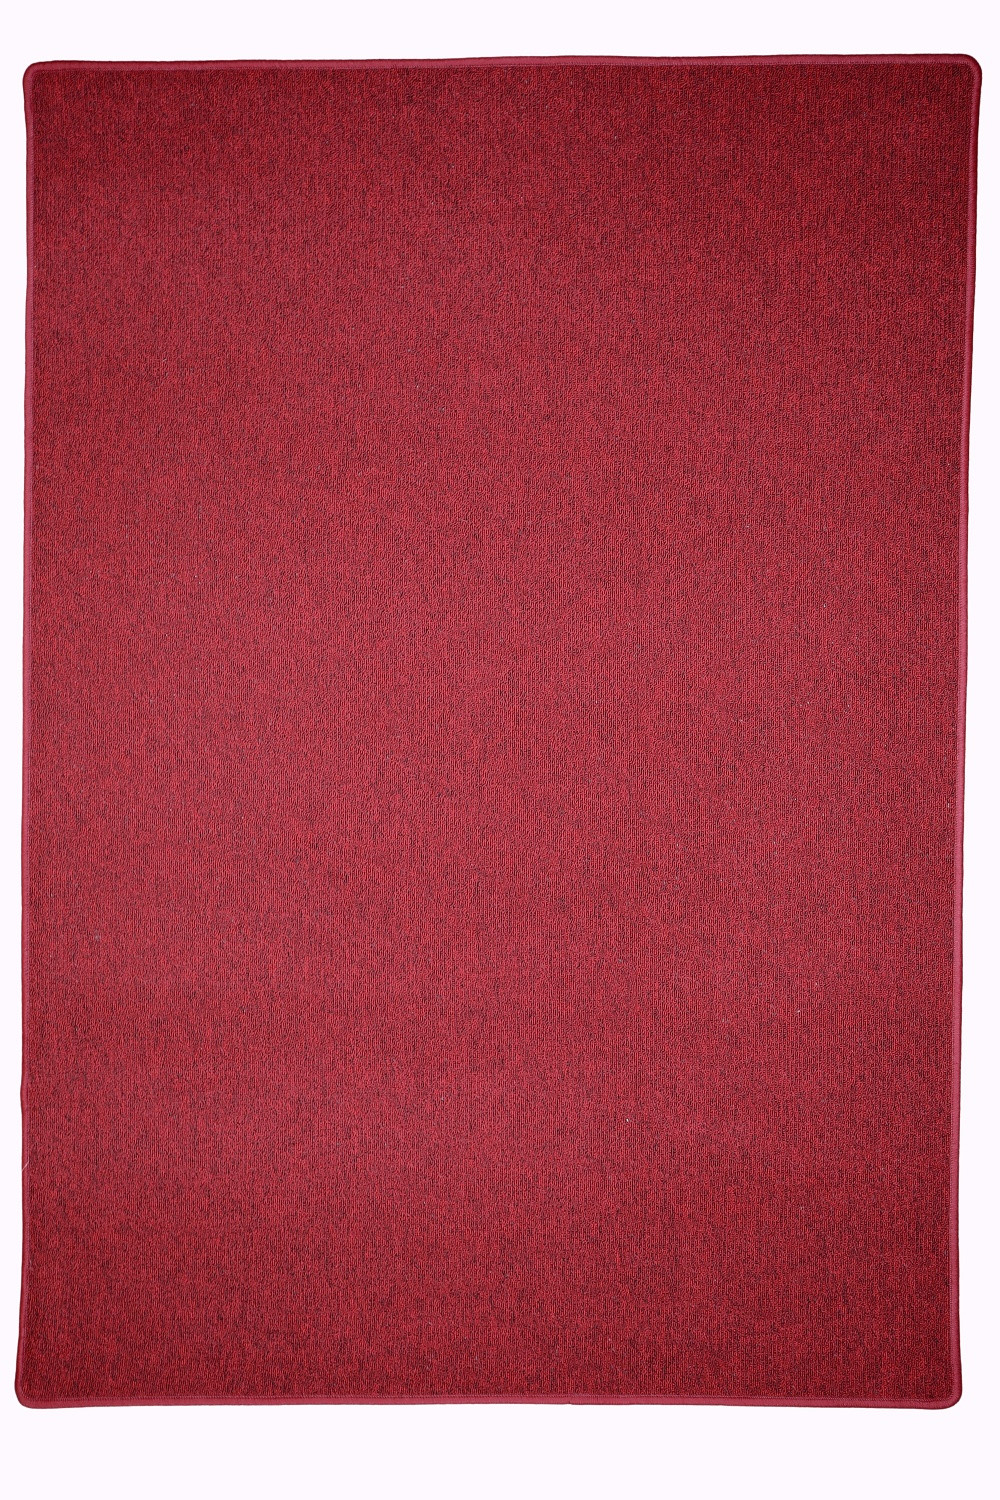 Kusový koberec Astra červená - 140x200 cm Vopi koberce 